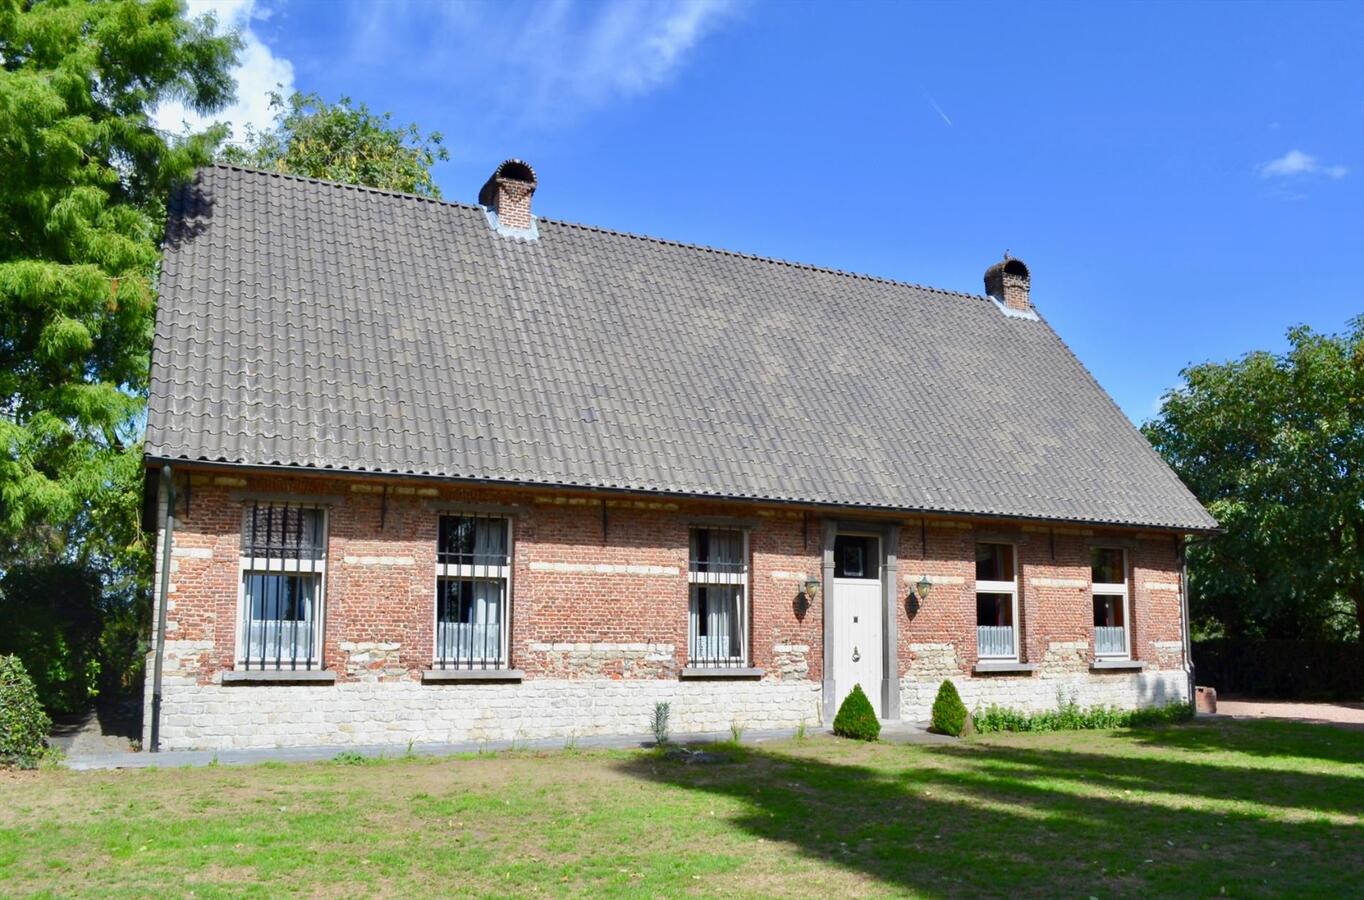 Property sold in Beveren